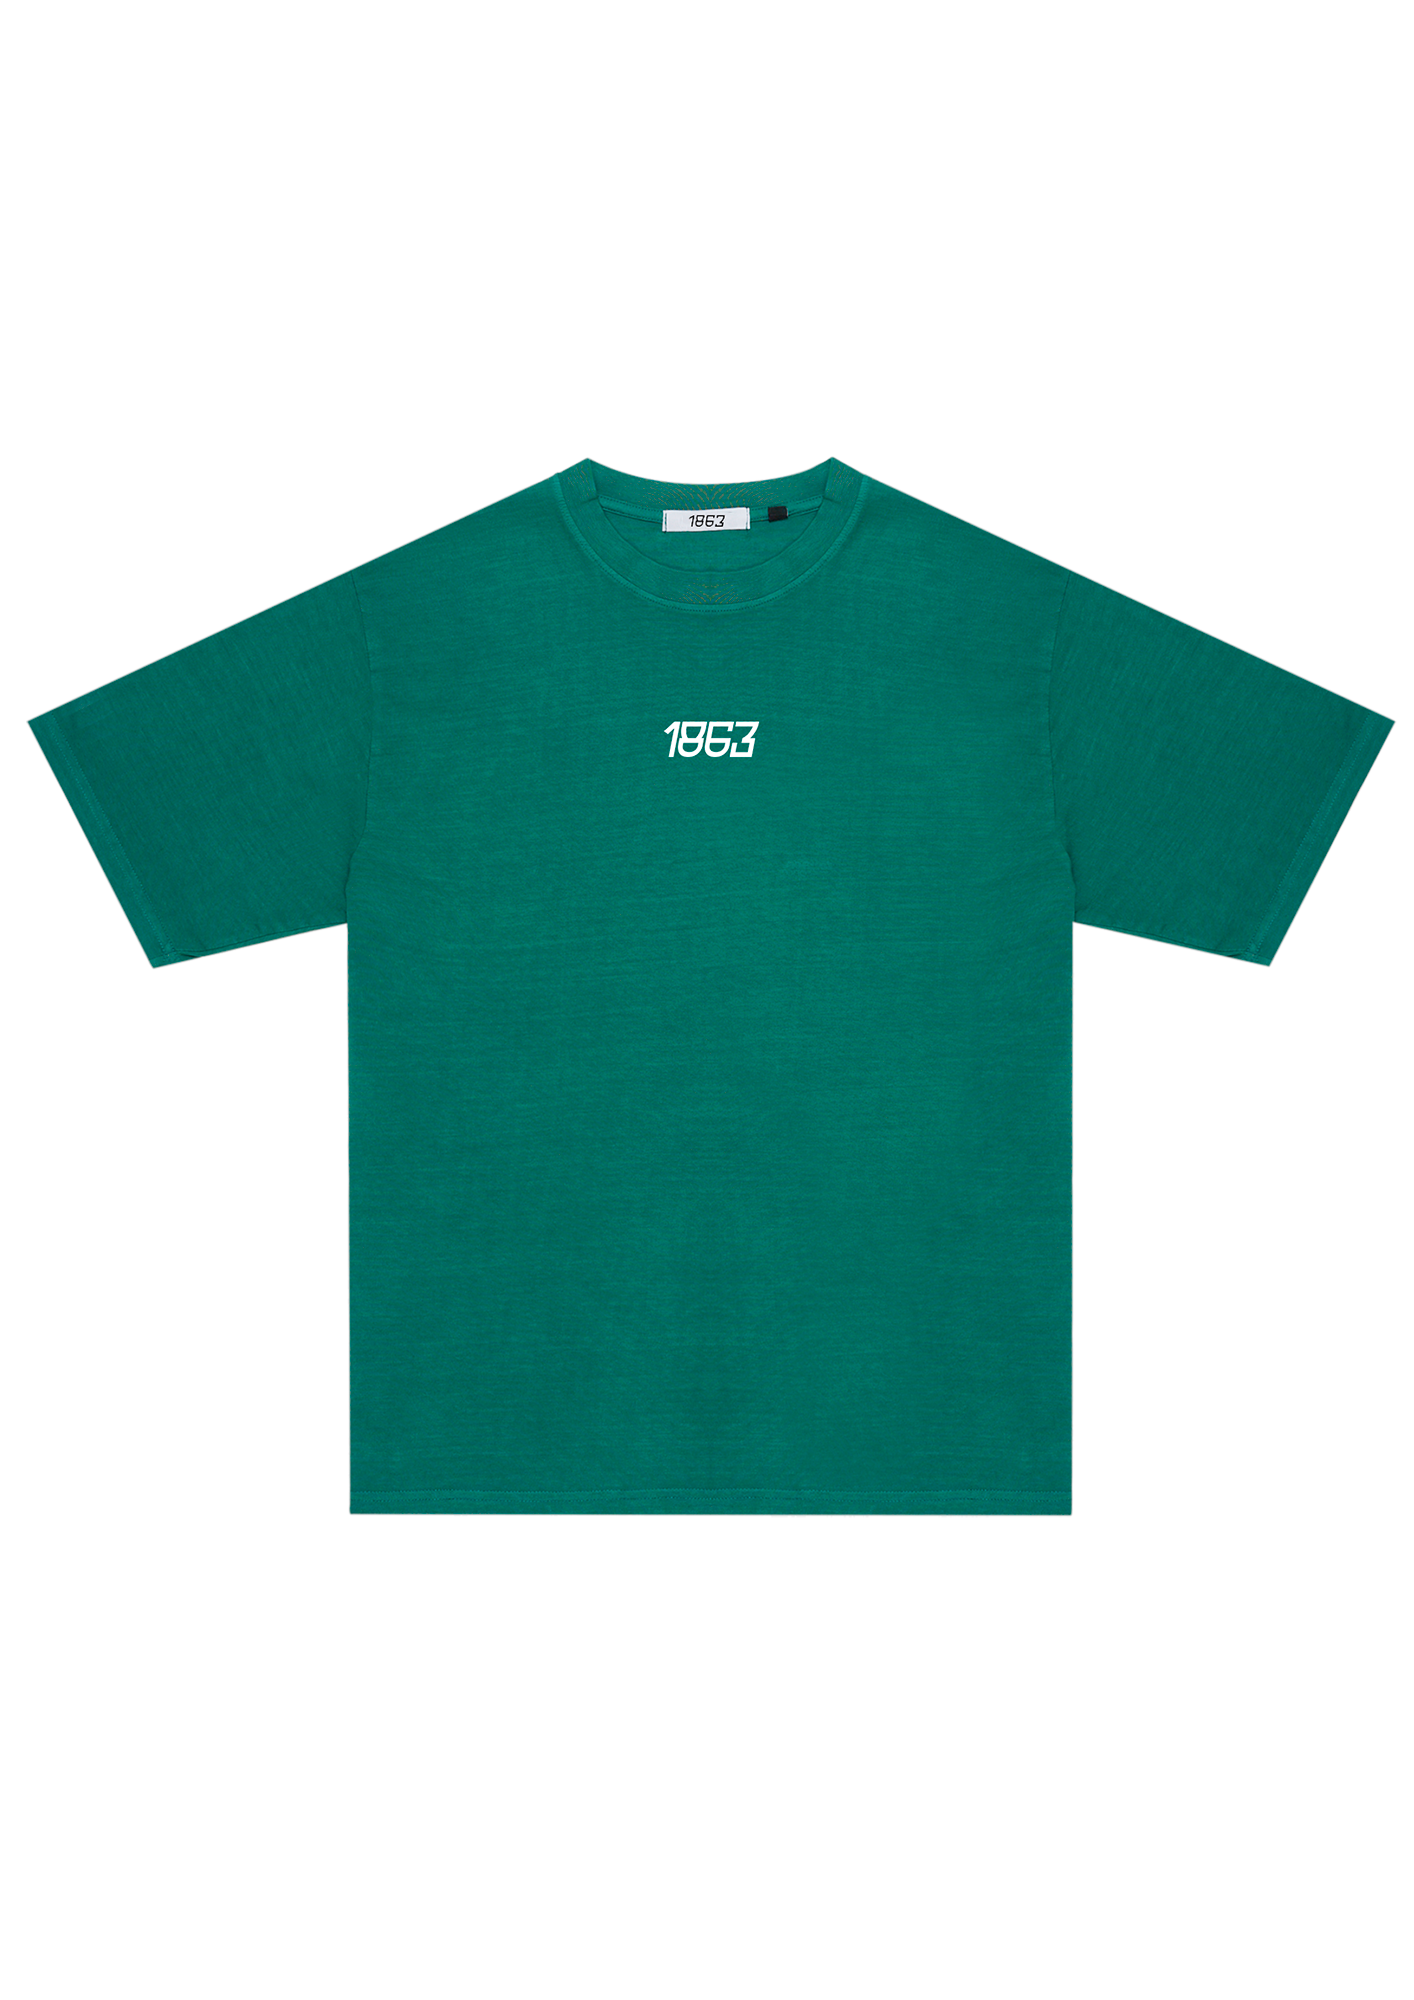 Camiseta Respect "Verde"